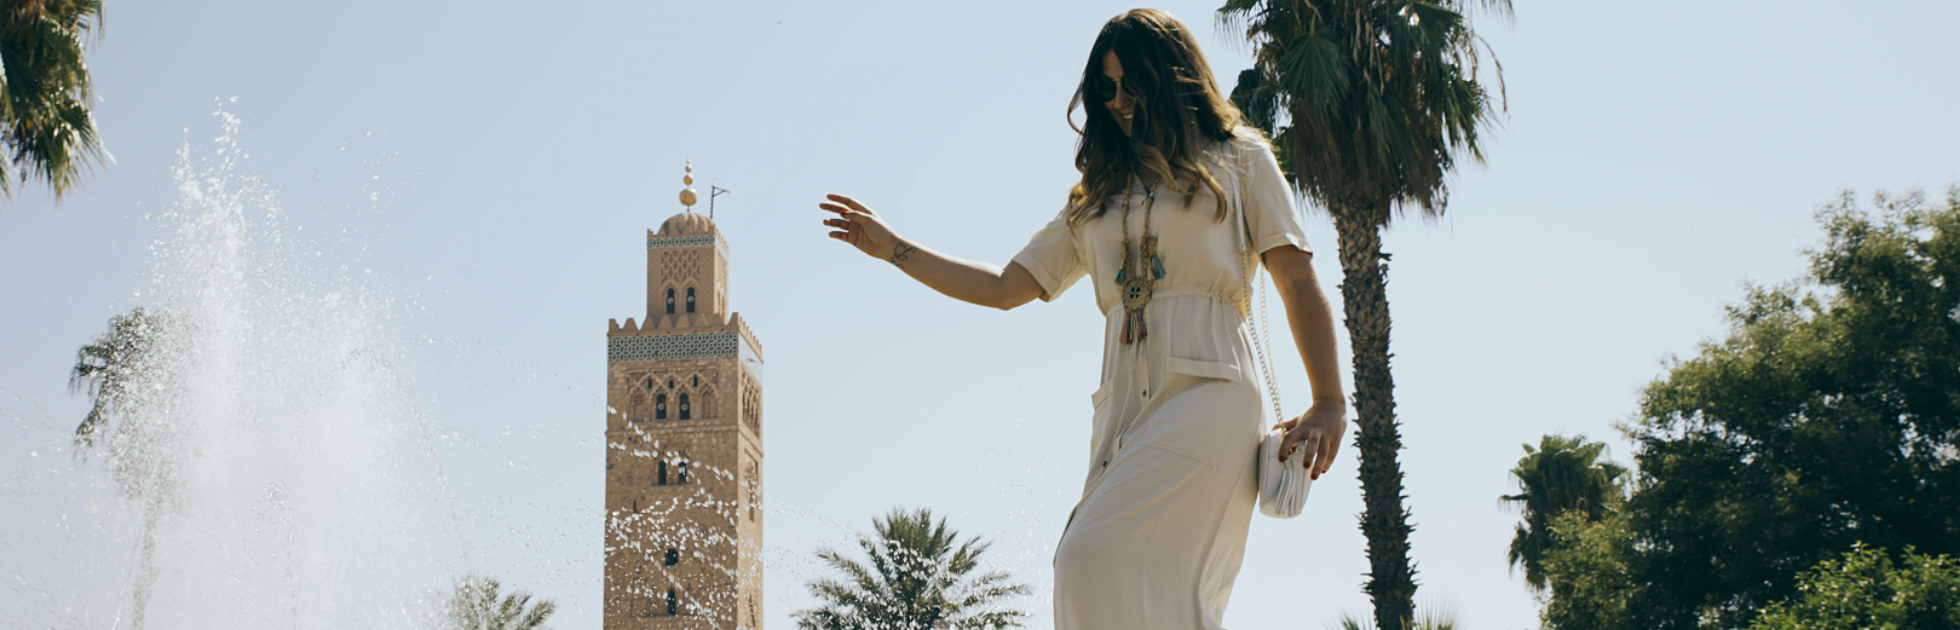 City-guide : L’essentiel pour découvrir Marrakech ! 